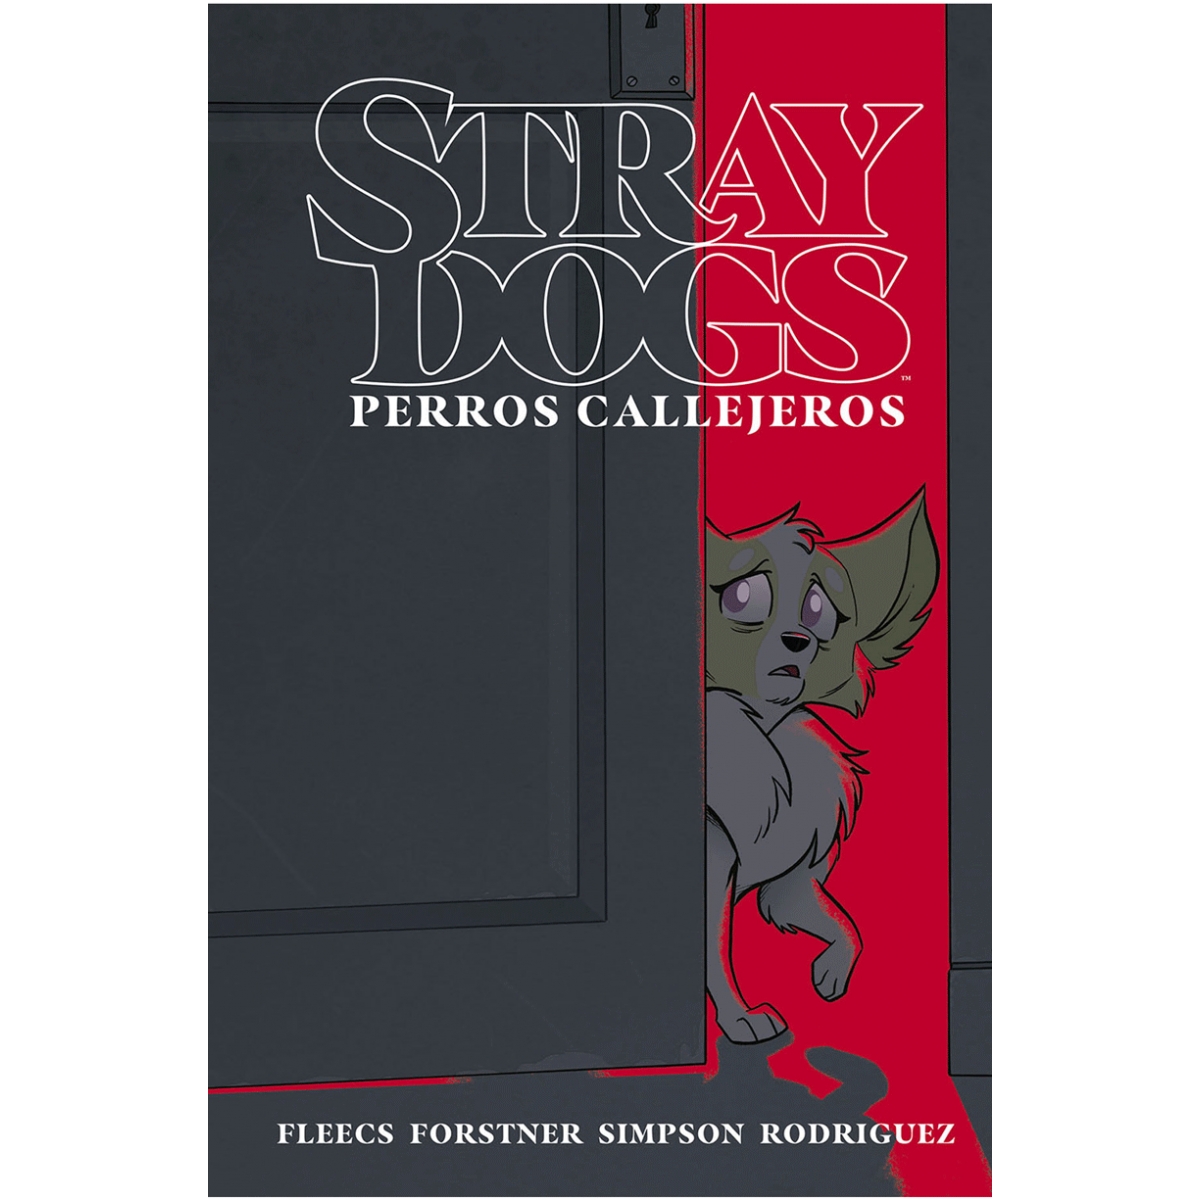 Stray Dogs Perros Callejeros